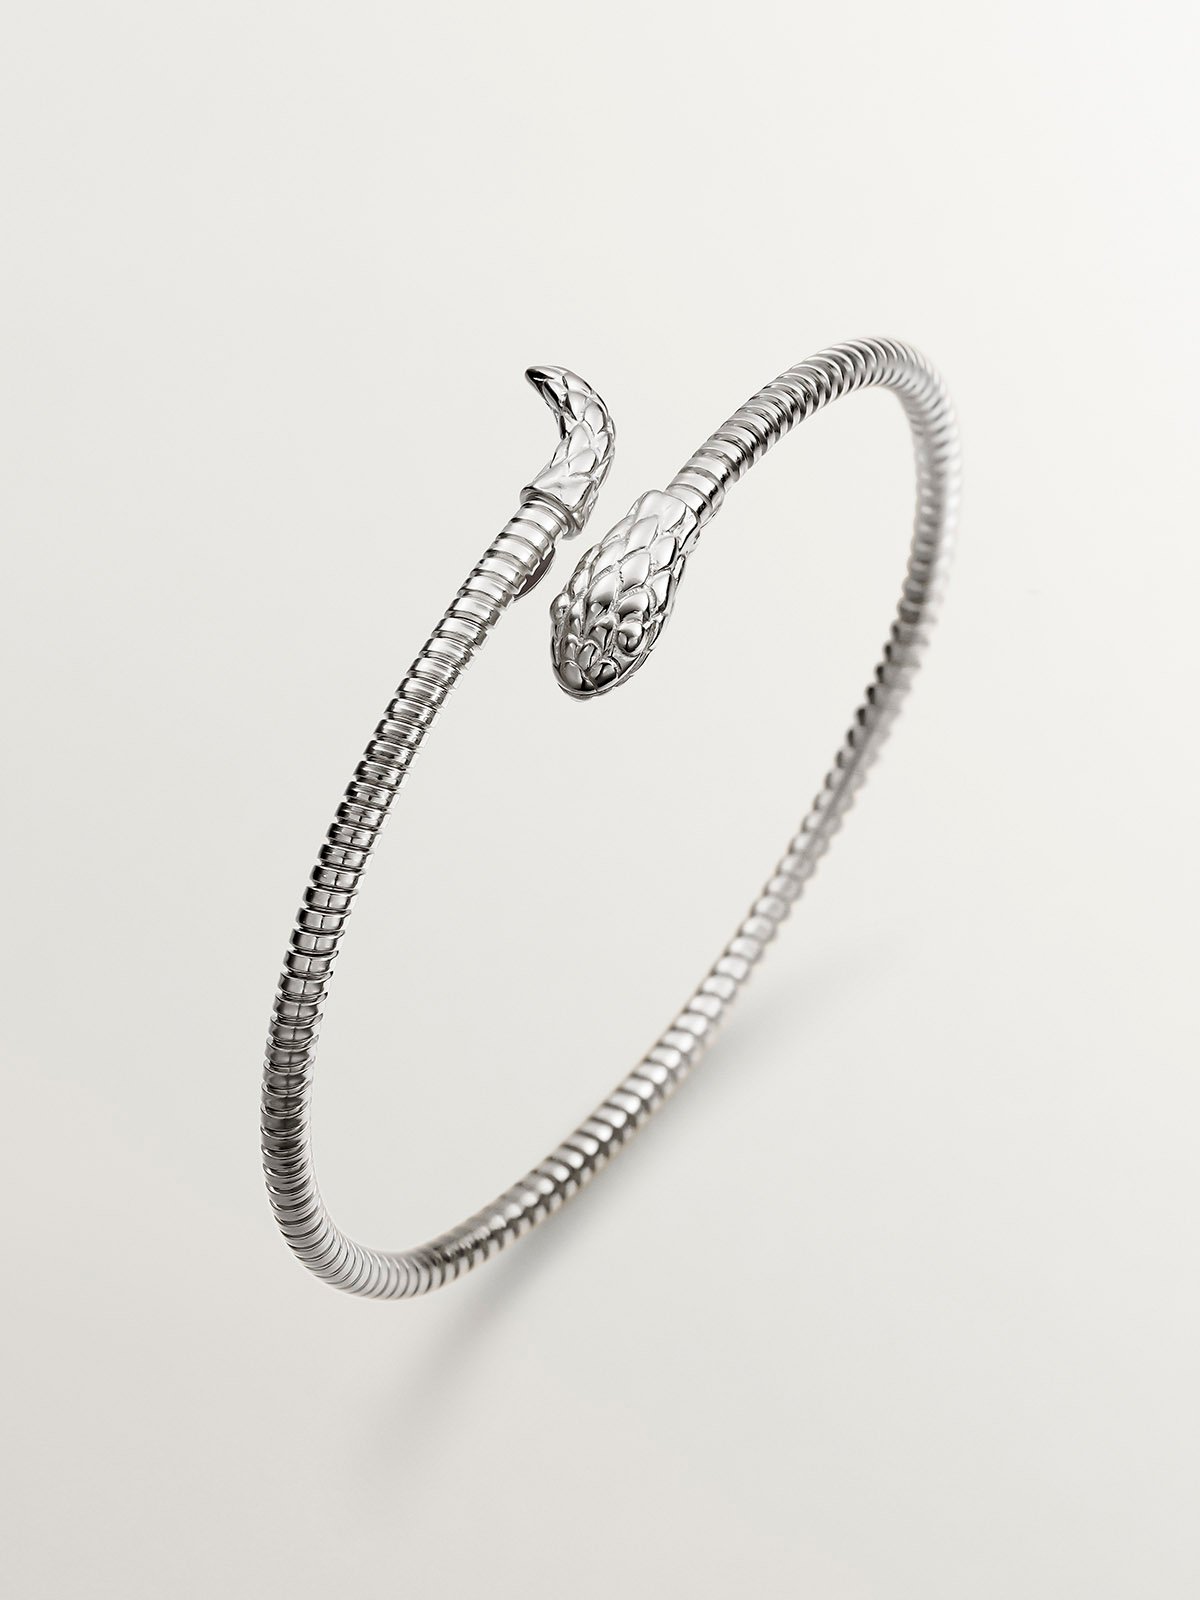 Brazalete de plata 925 con forma de serpiente